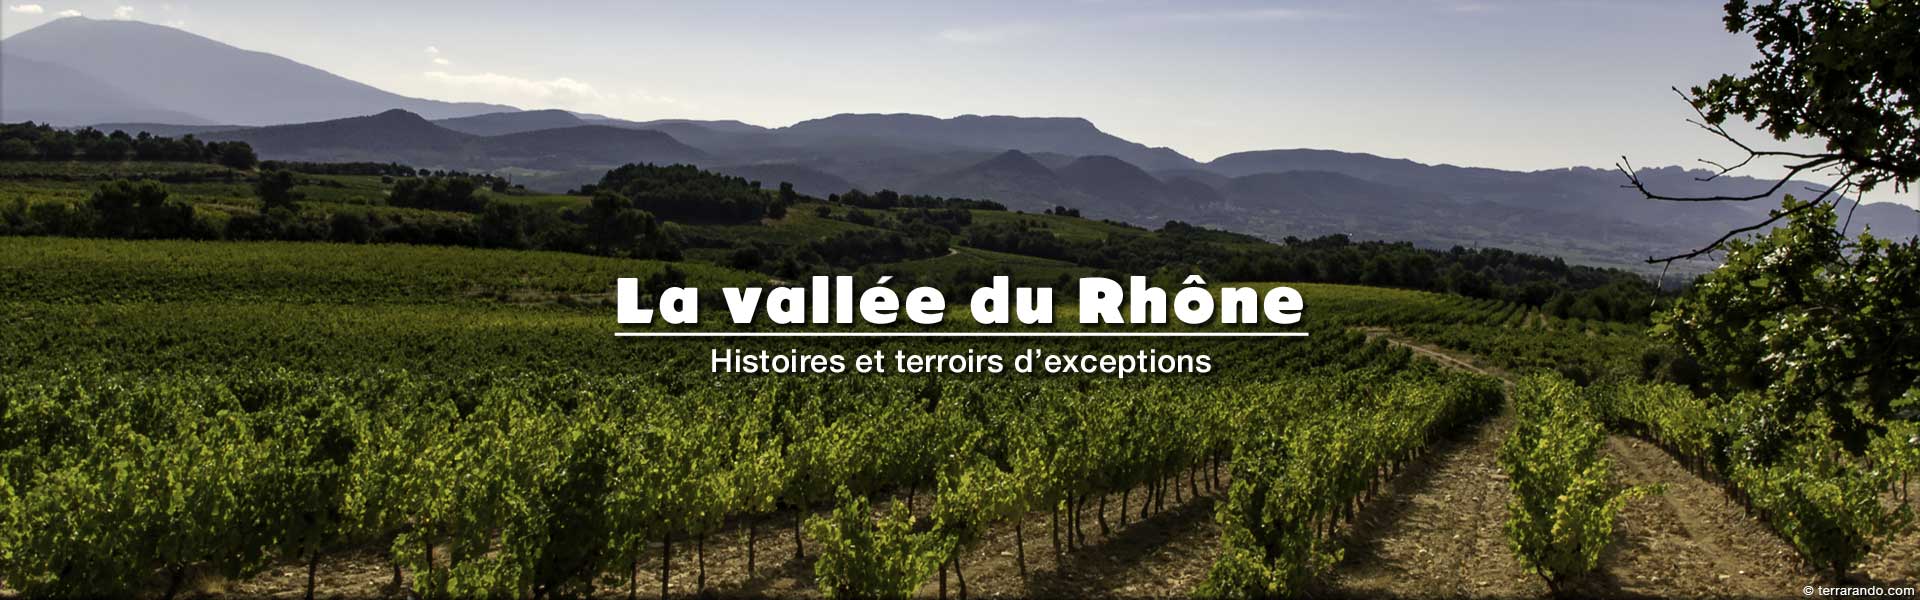 Randonnées pédestres dans la vallée du Rhône en Vaucluse